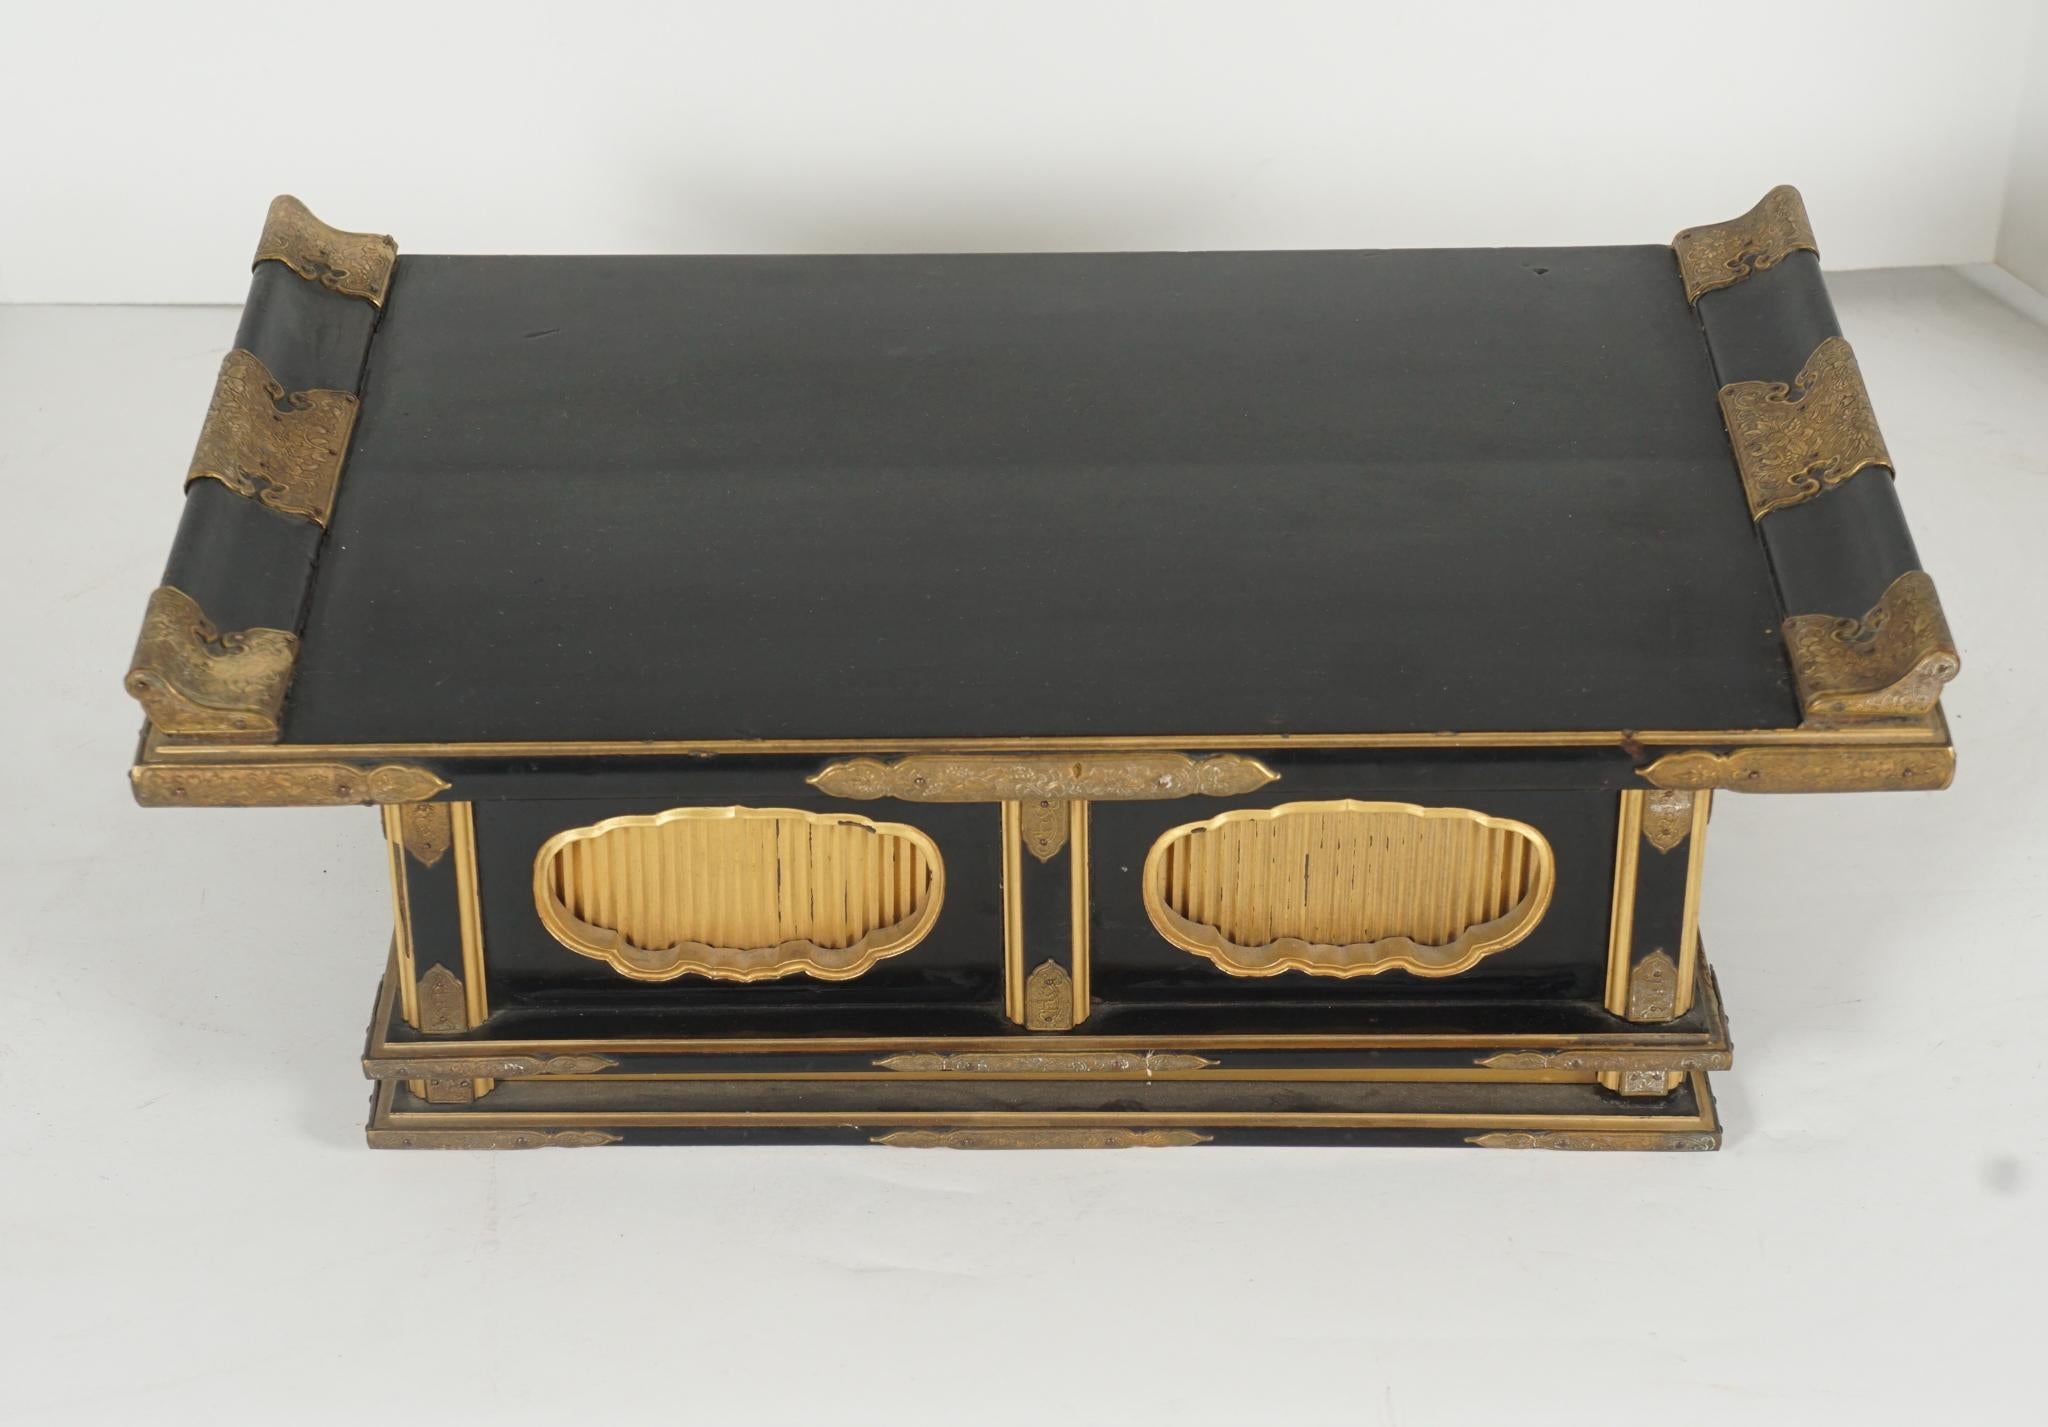 Ce petit autel ou support de la période Meiji de la fin du XIXe siècle, avec des montures en laiton doré et gravé, est un exemple raffiné de l'art de la laque au Japon. Réalisé en laque noire profonde et brillante, avec des bords dorés simples et